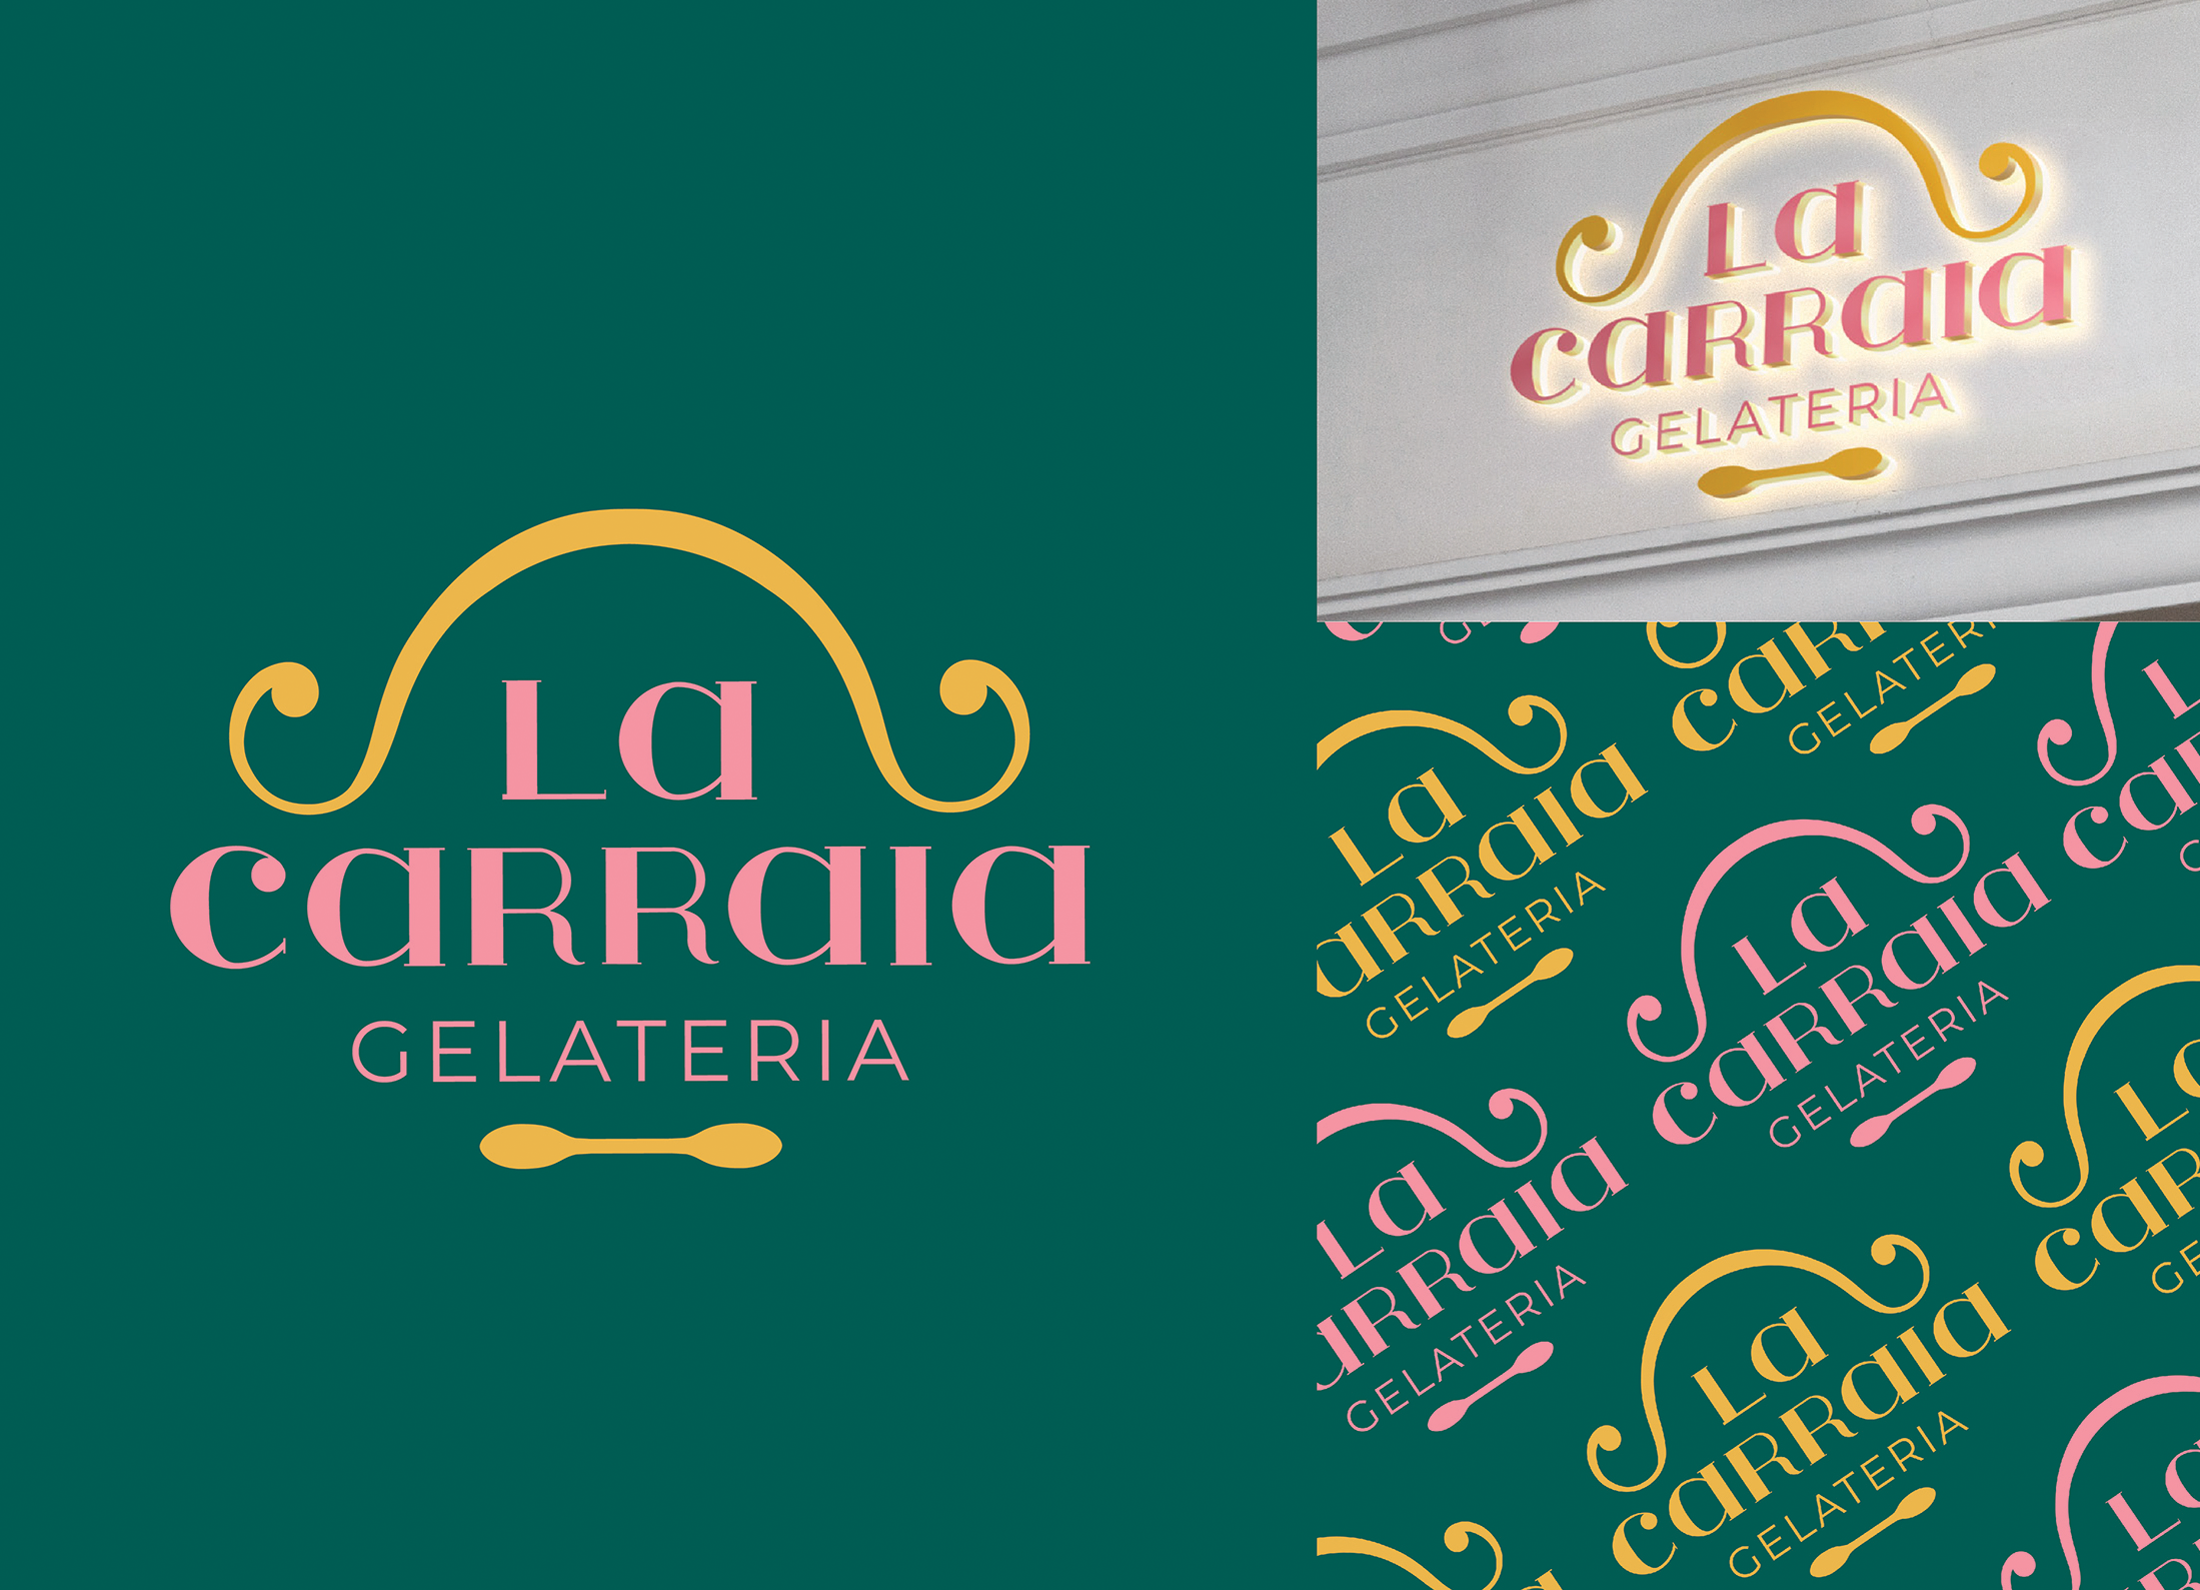 La Carraia Brand Identity Redesign - Image 1